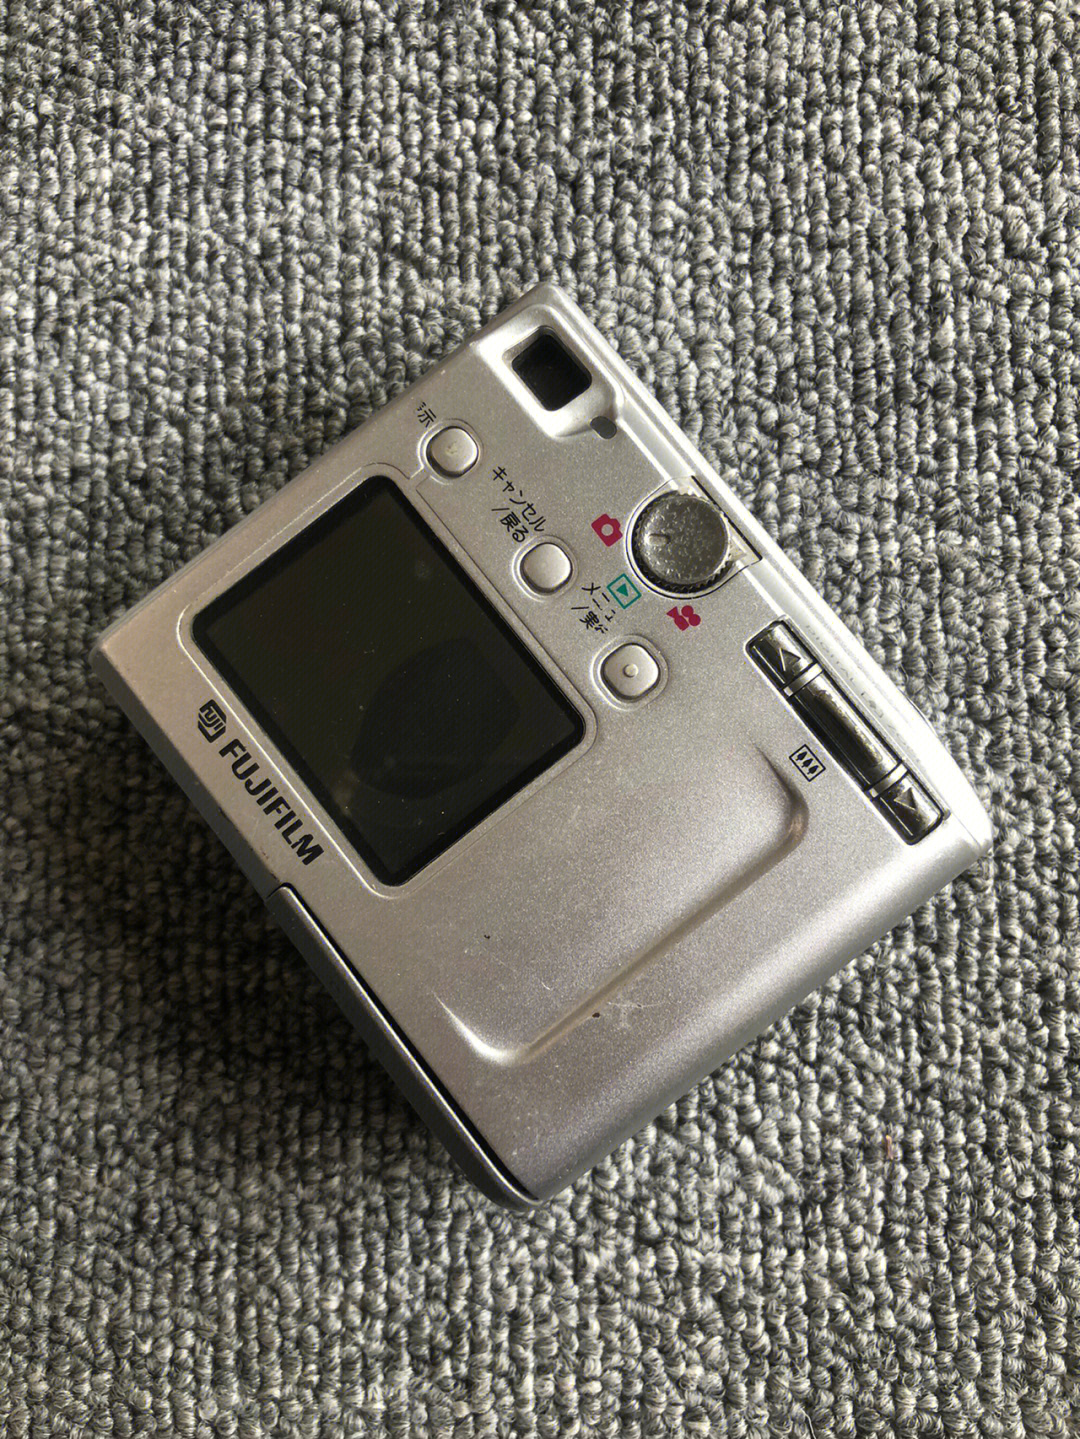 富士方块相机finepix4500